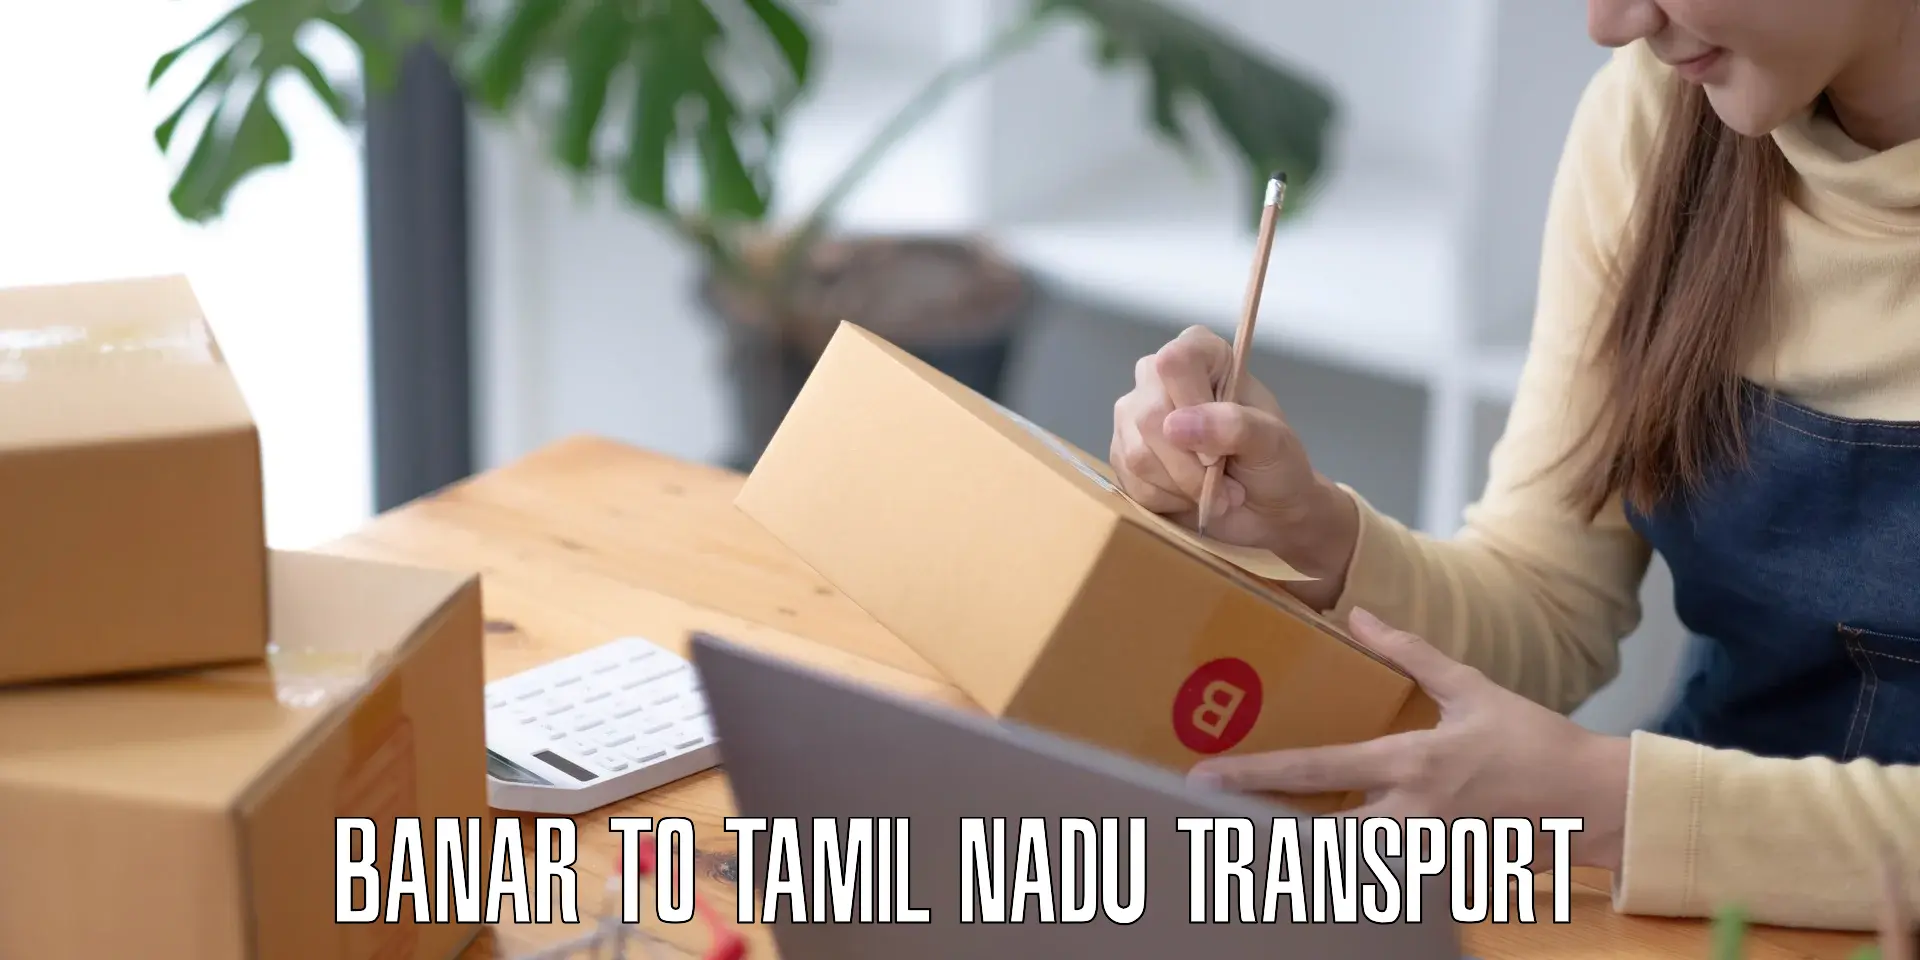 Commercial transport service Banar to Tamil Nadu